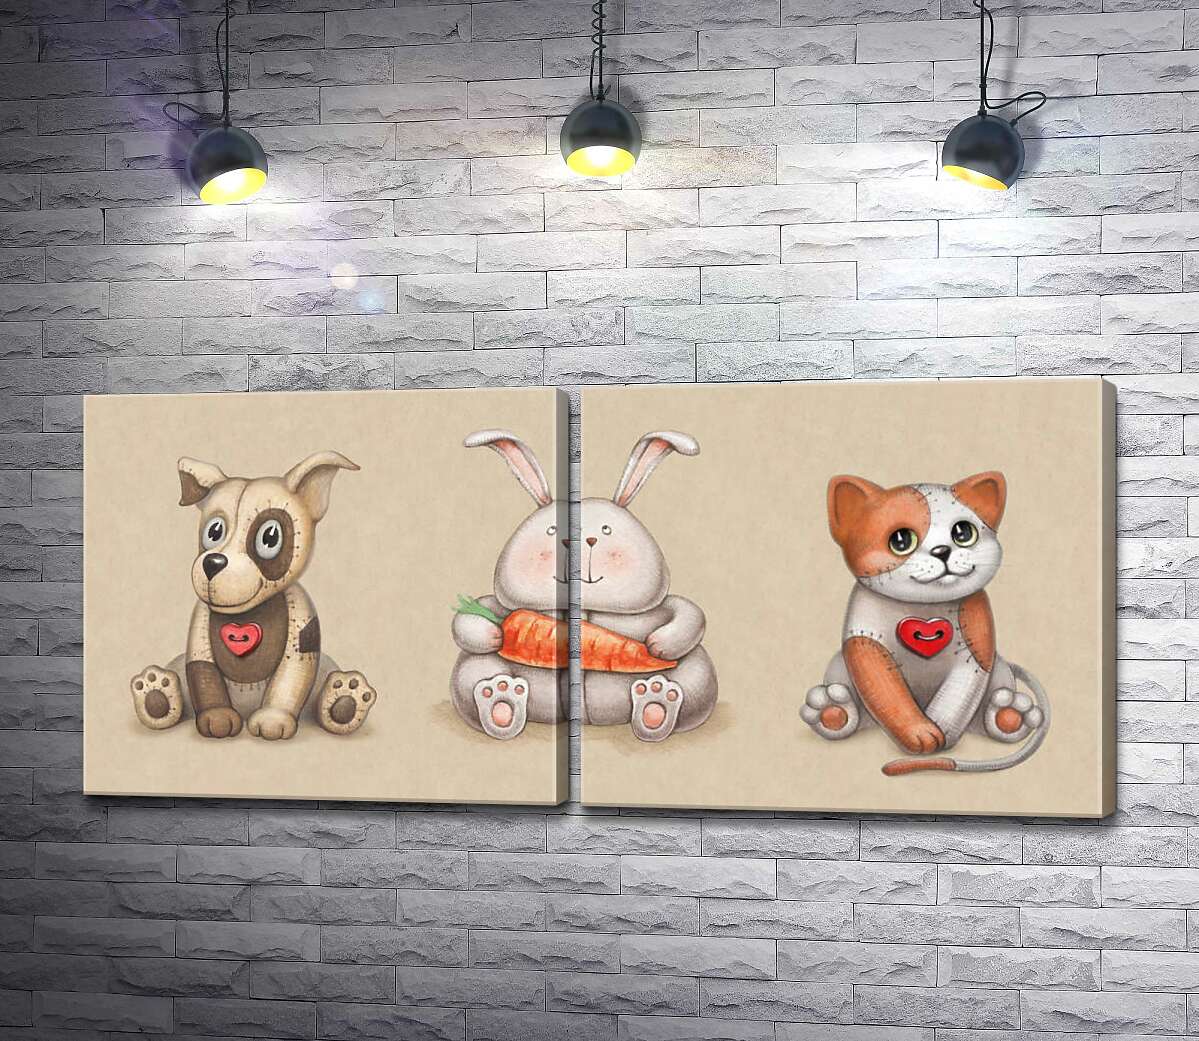 модульная картина Игрушечное трио: пятнистая собака, котик и зайчик с морковкой по центру